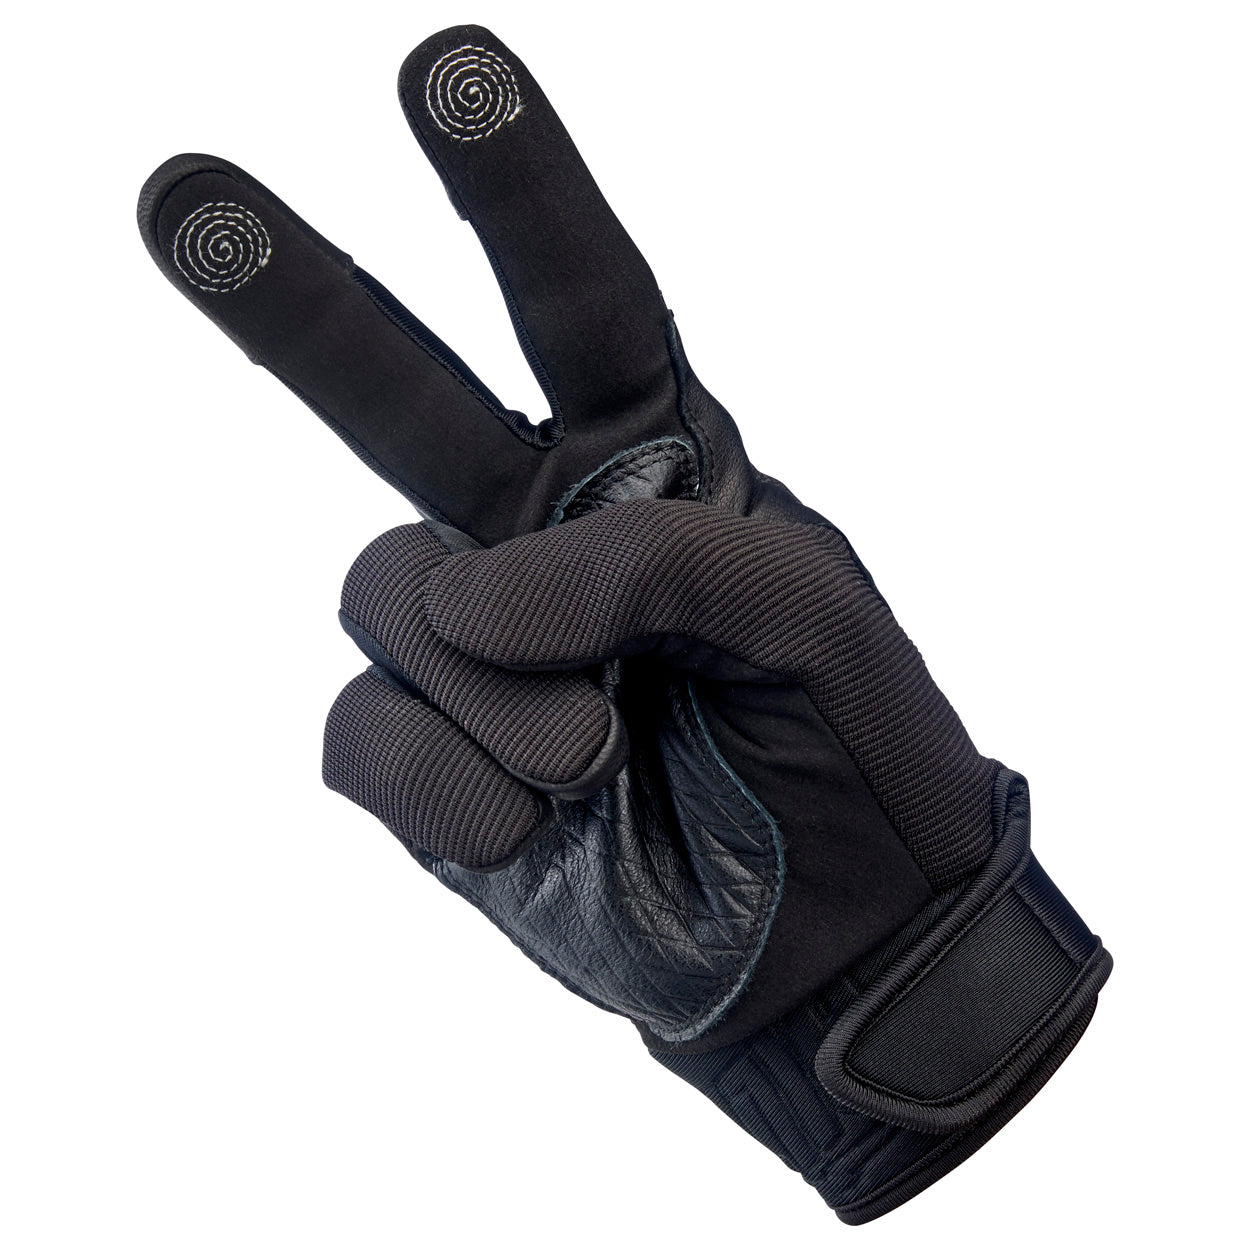 Baja Gloves - Black Out